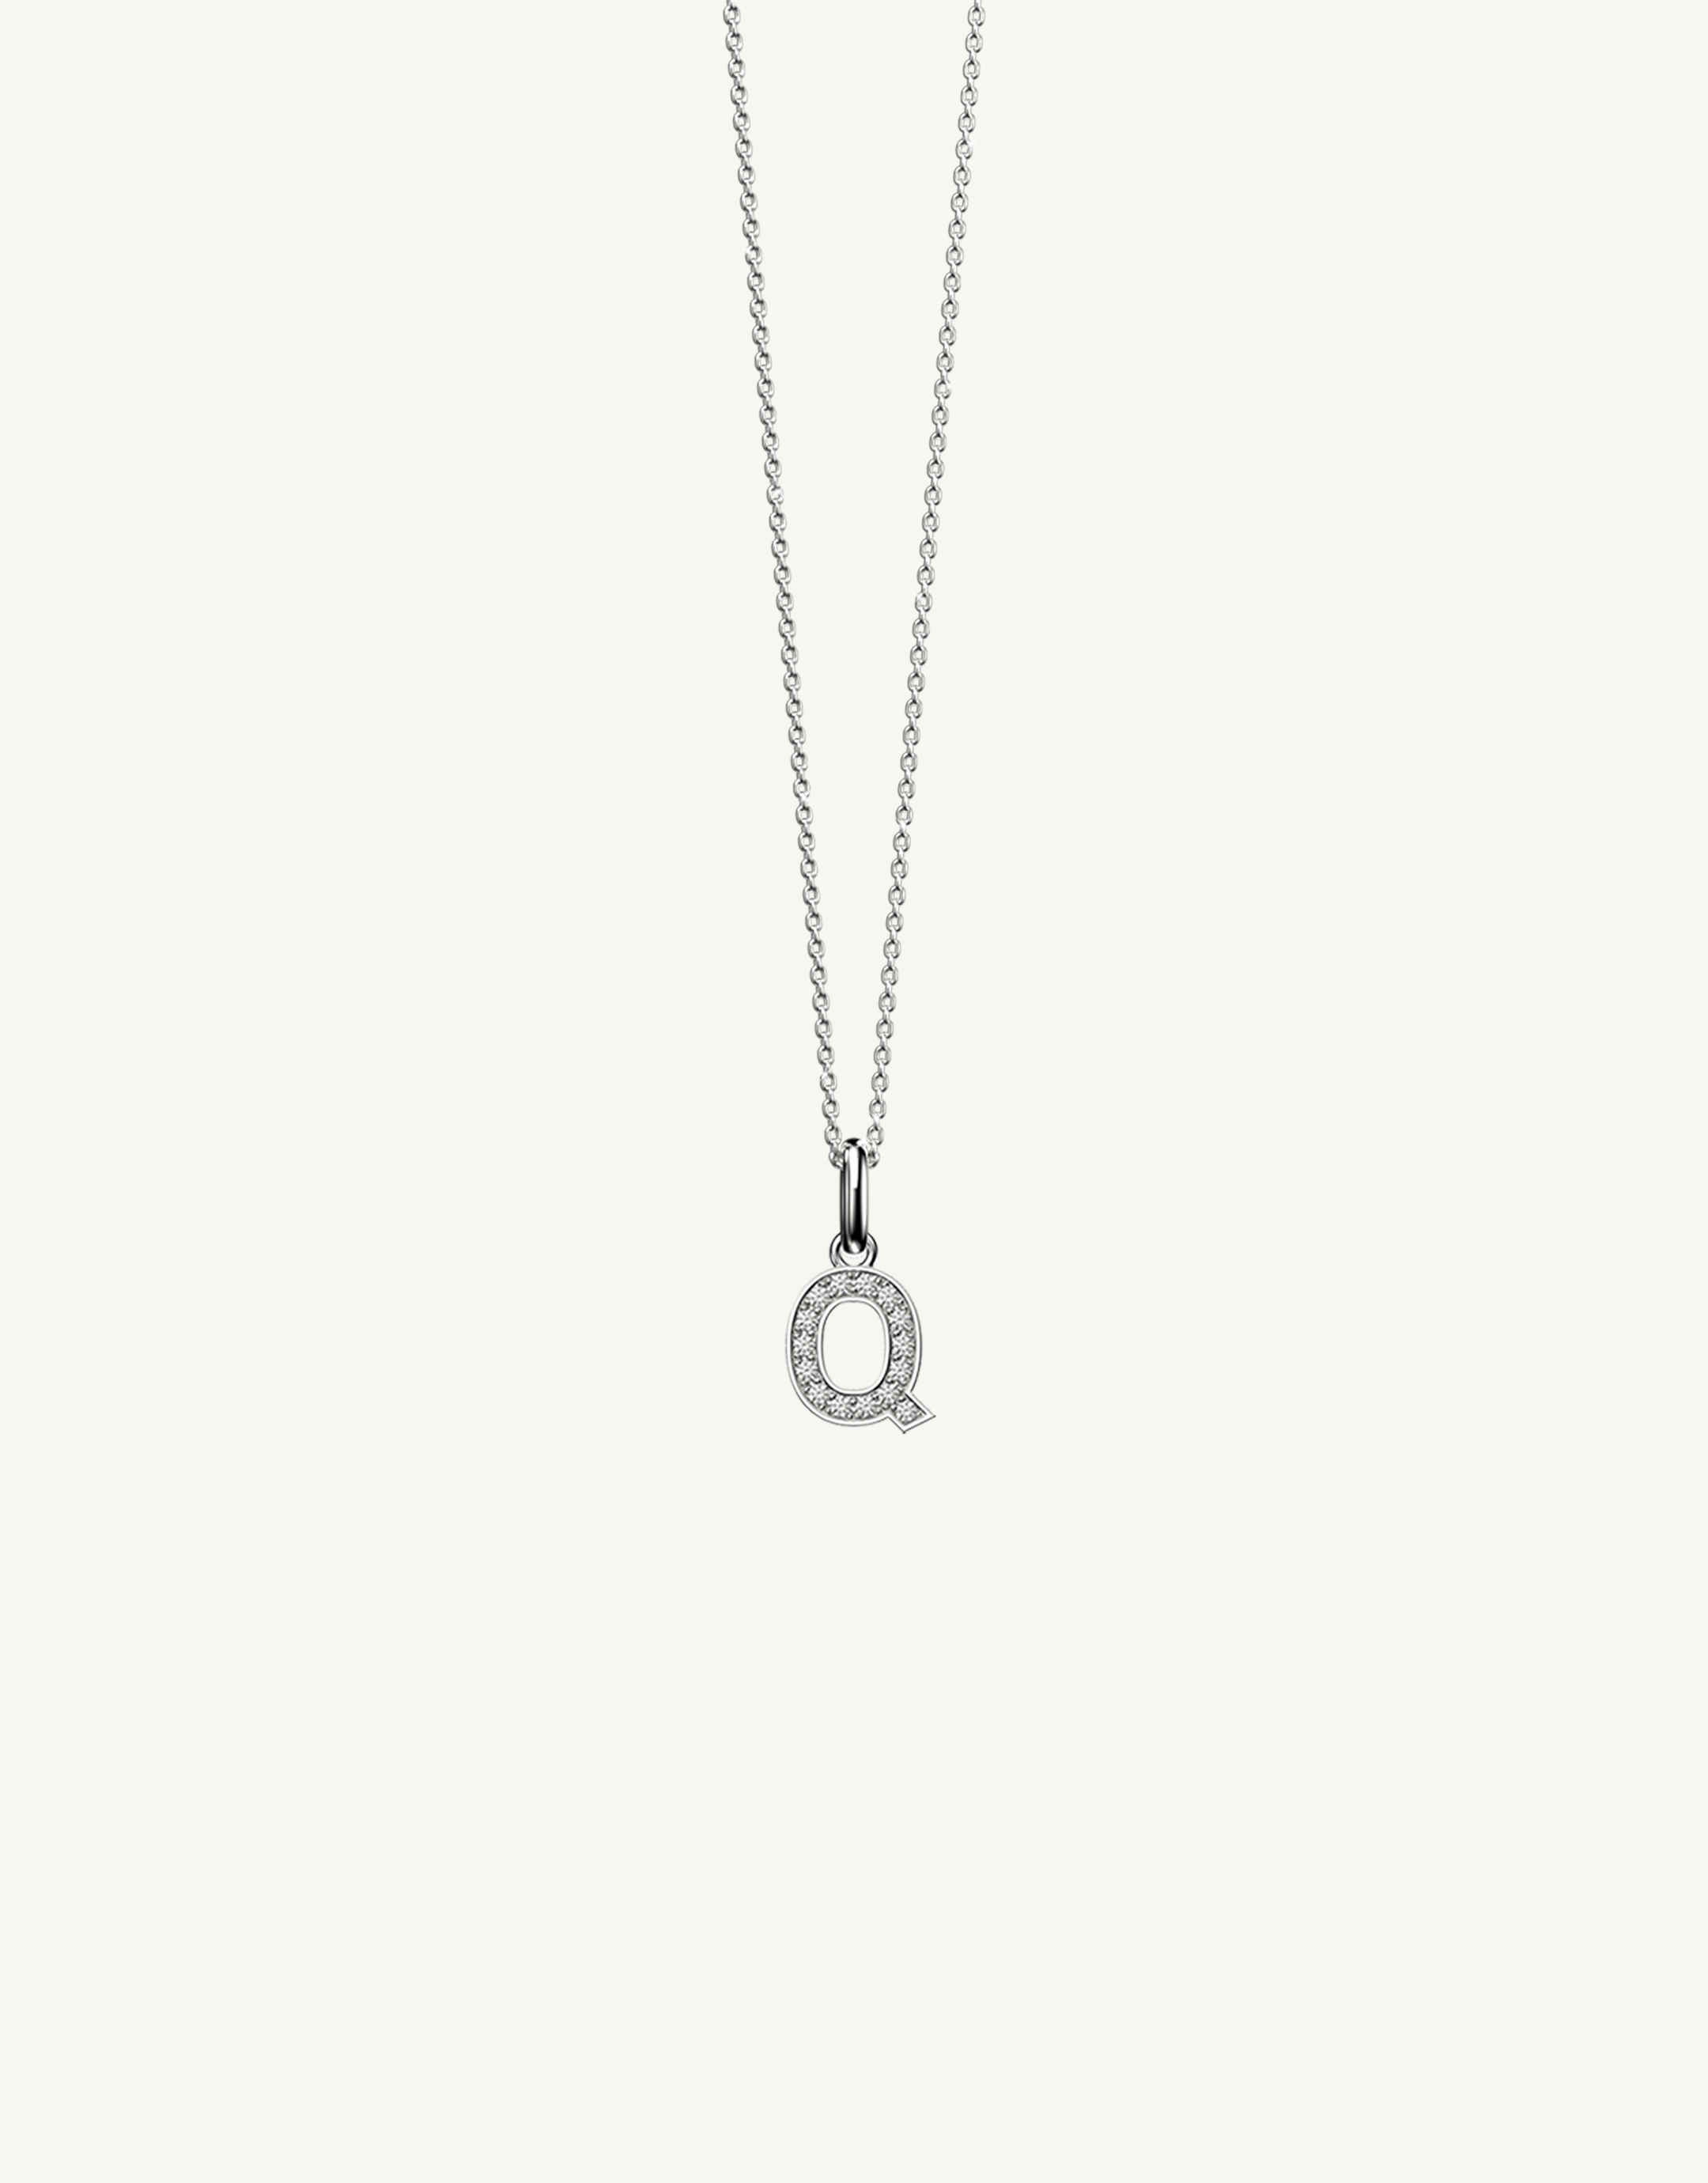 18k white gold diamond initial pendant. Luxury custom design. Initial Q.